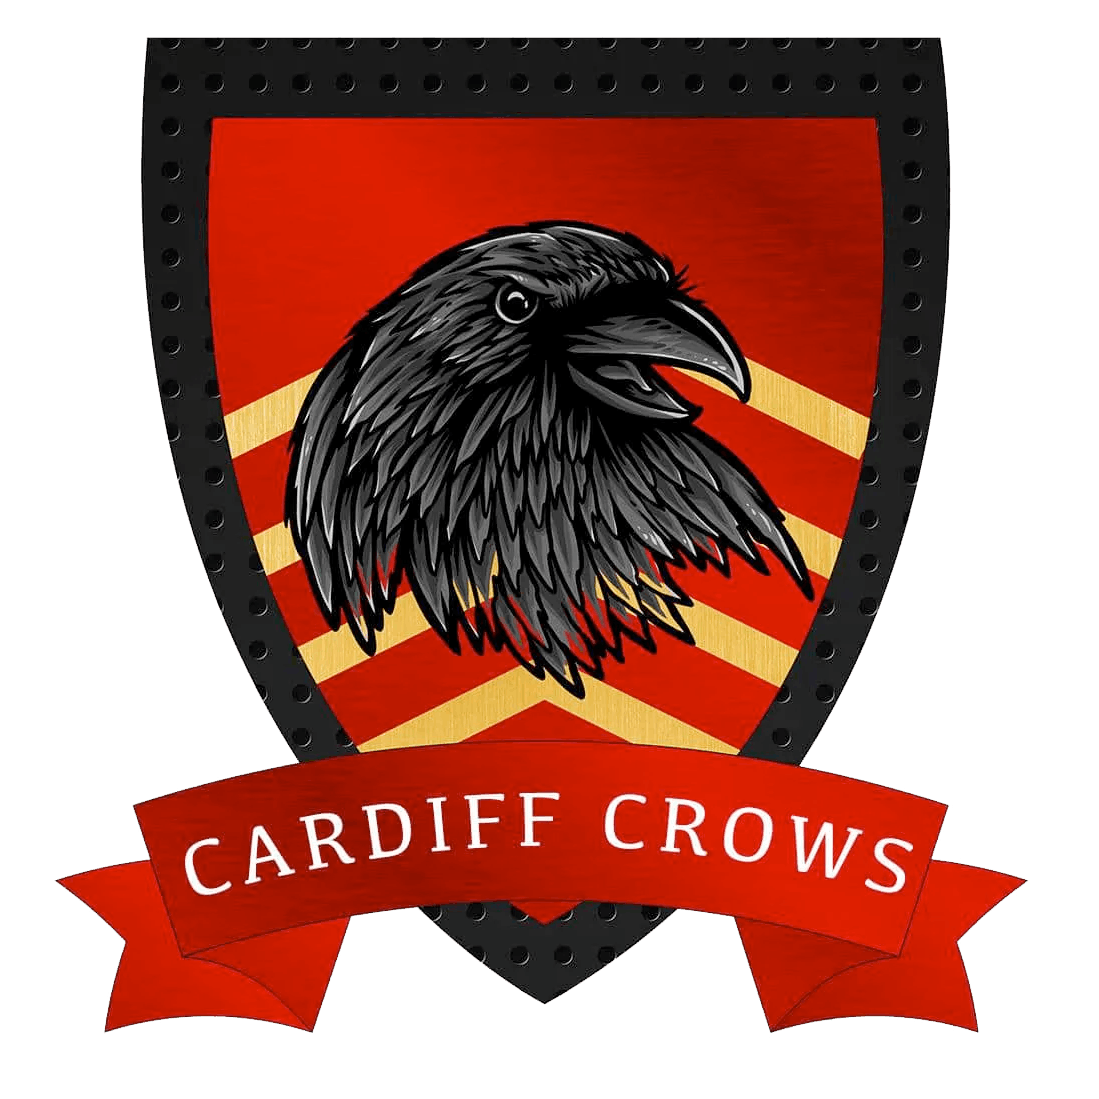 Cardiff University Quidditch Club logo